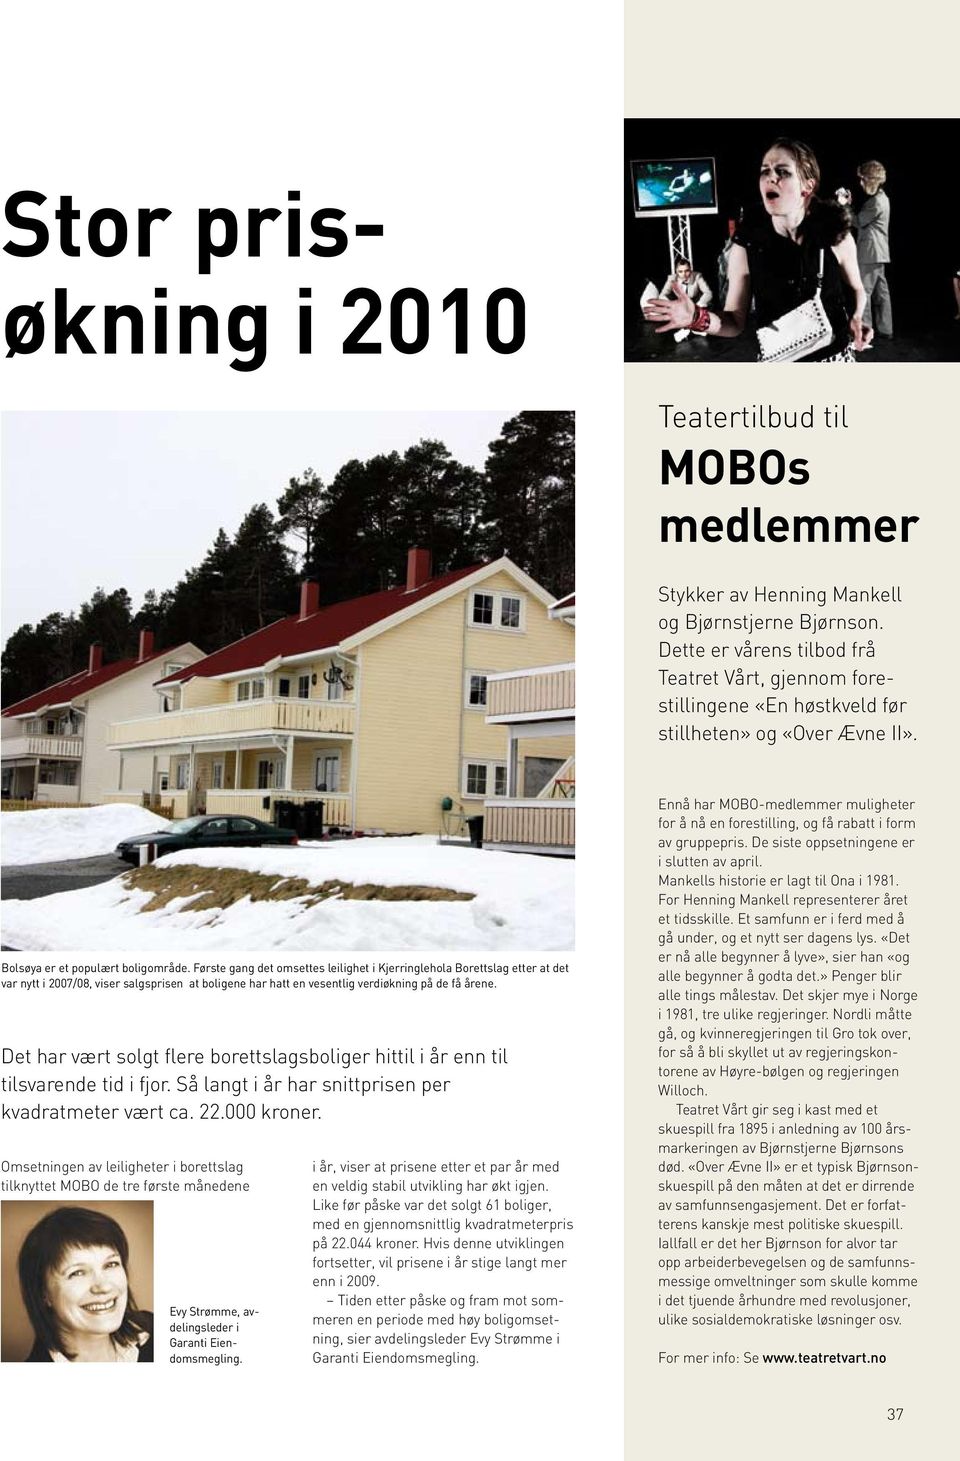 Første gang det omsettes leilighet i Kjerringlehola Borettslag etter at det var nytt i 2007/08, viser salgsprisen at boligene har hatt en vesentlig verdiøkning på de få årene.